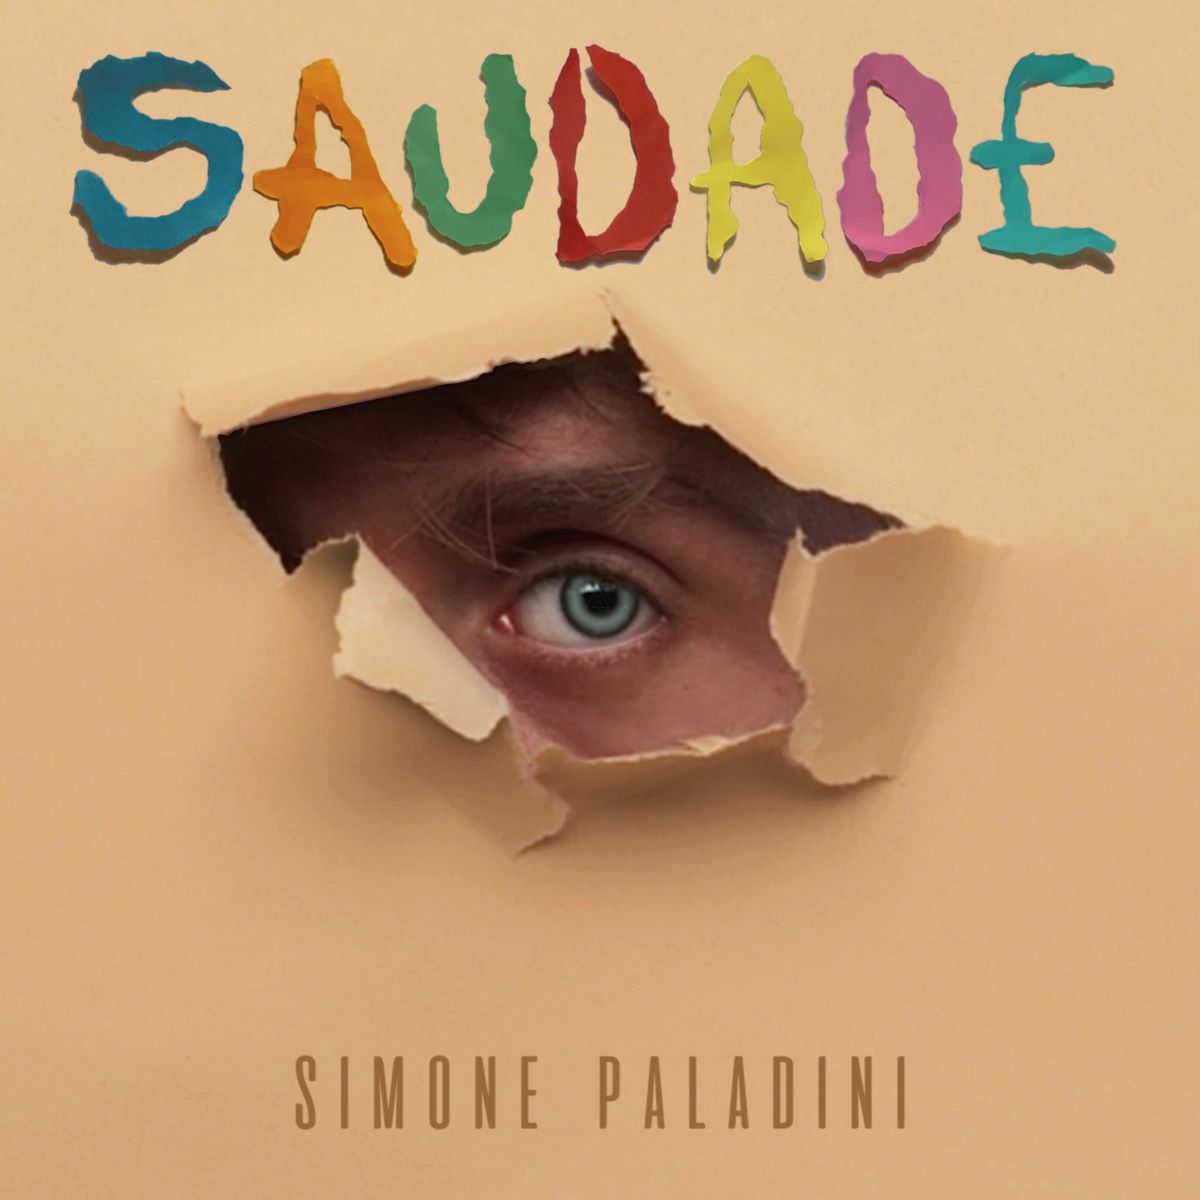 Oggi in digitale e in radio “Saudade” , nuovo singolo del cantautore romano Simone Paladini (ex Influenze Negative)